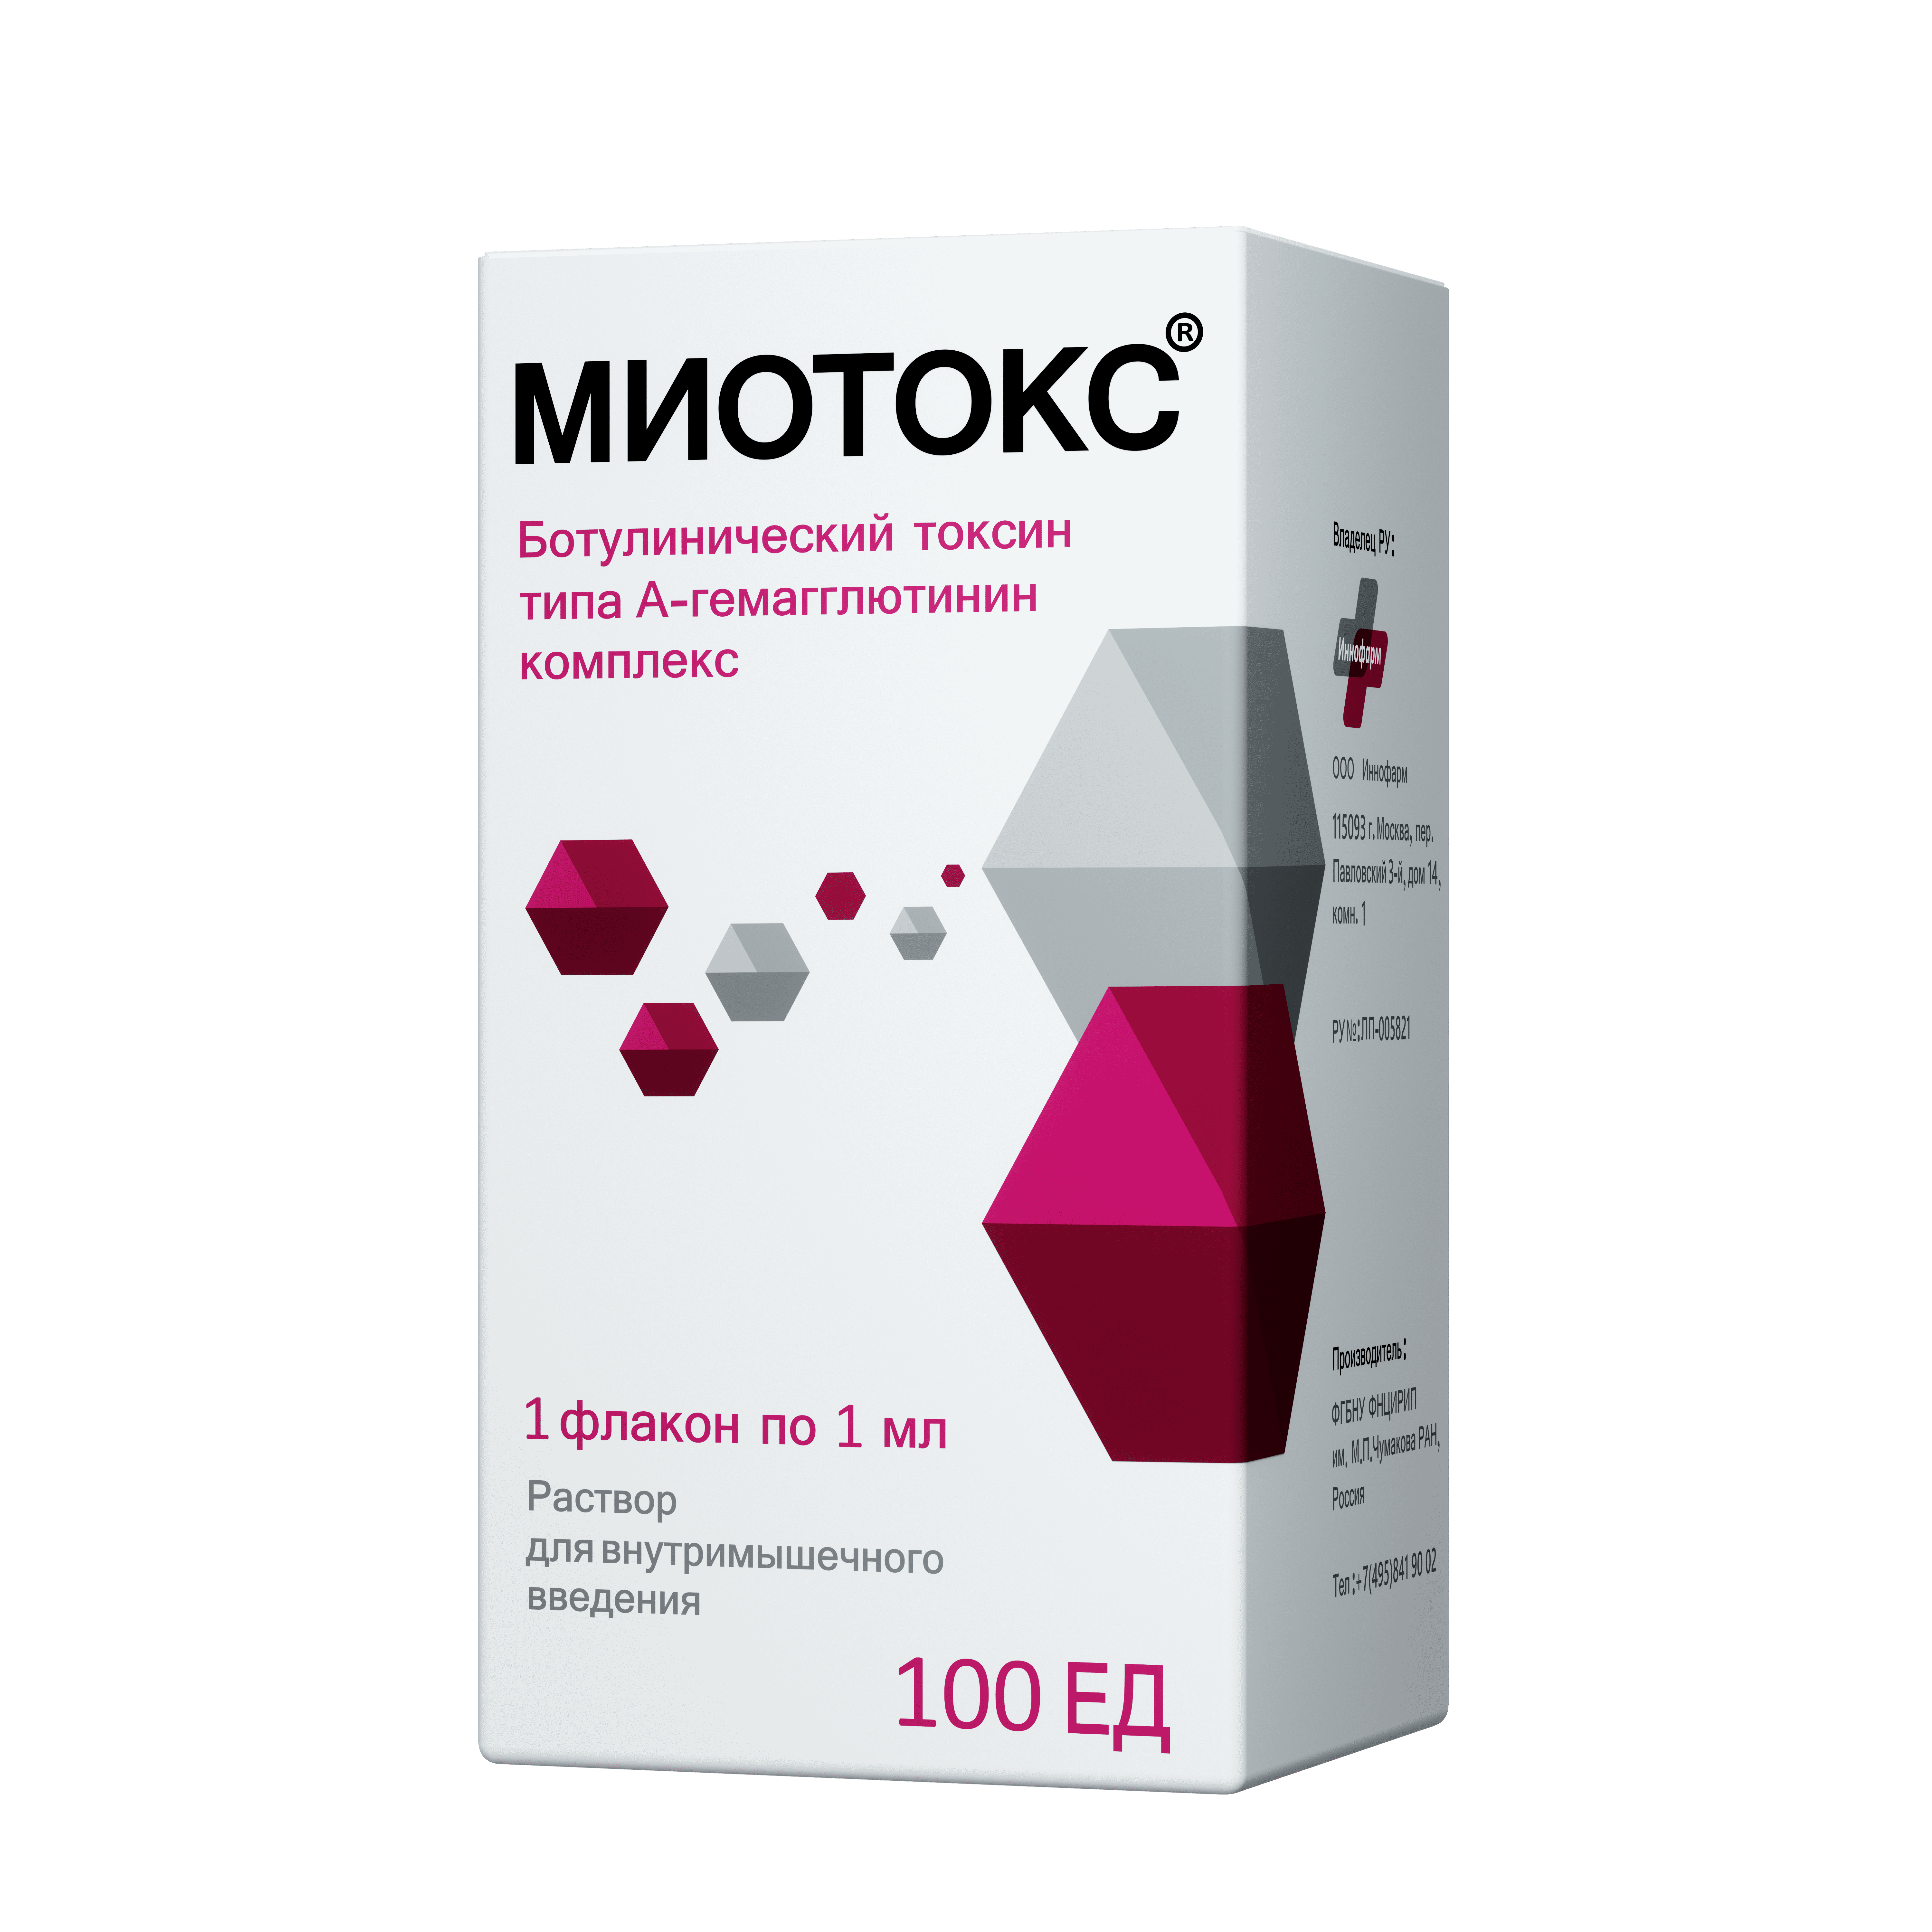 Препарат Миотокс